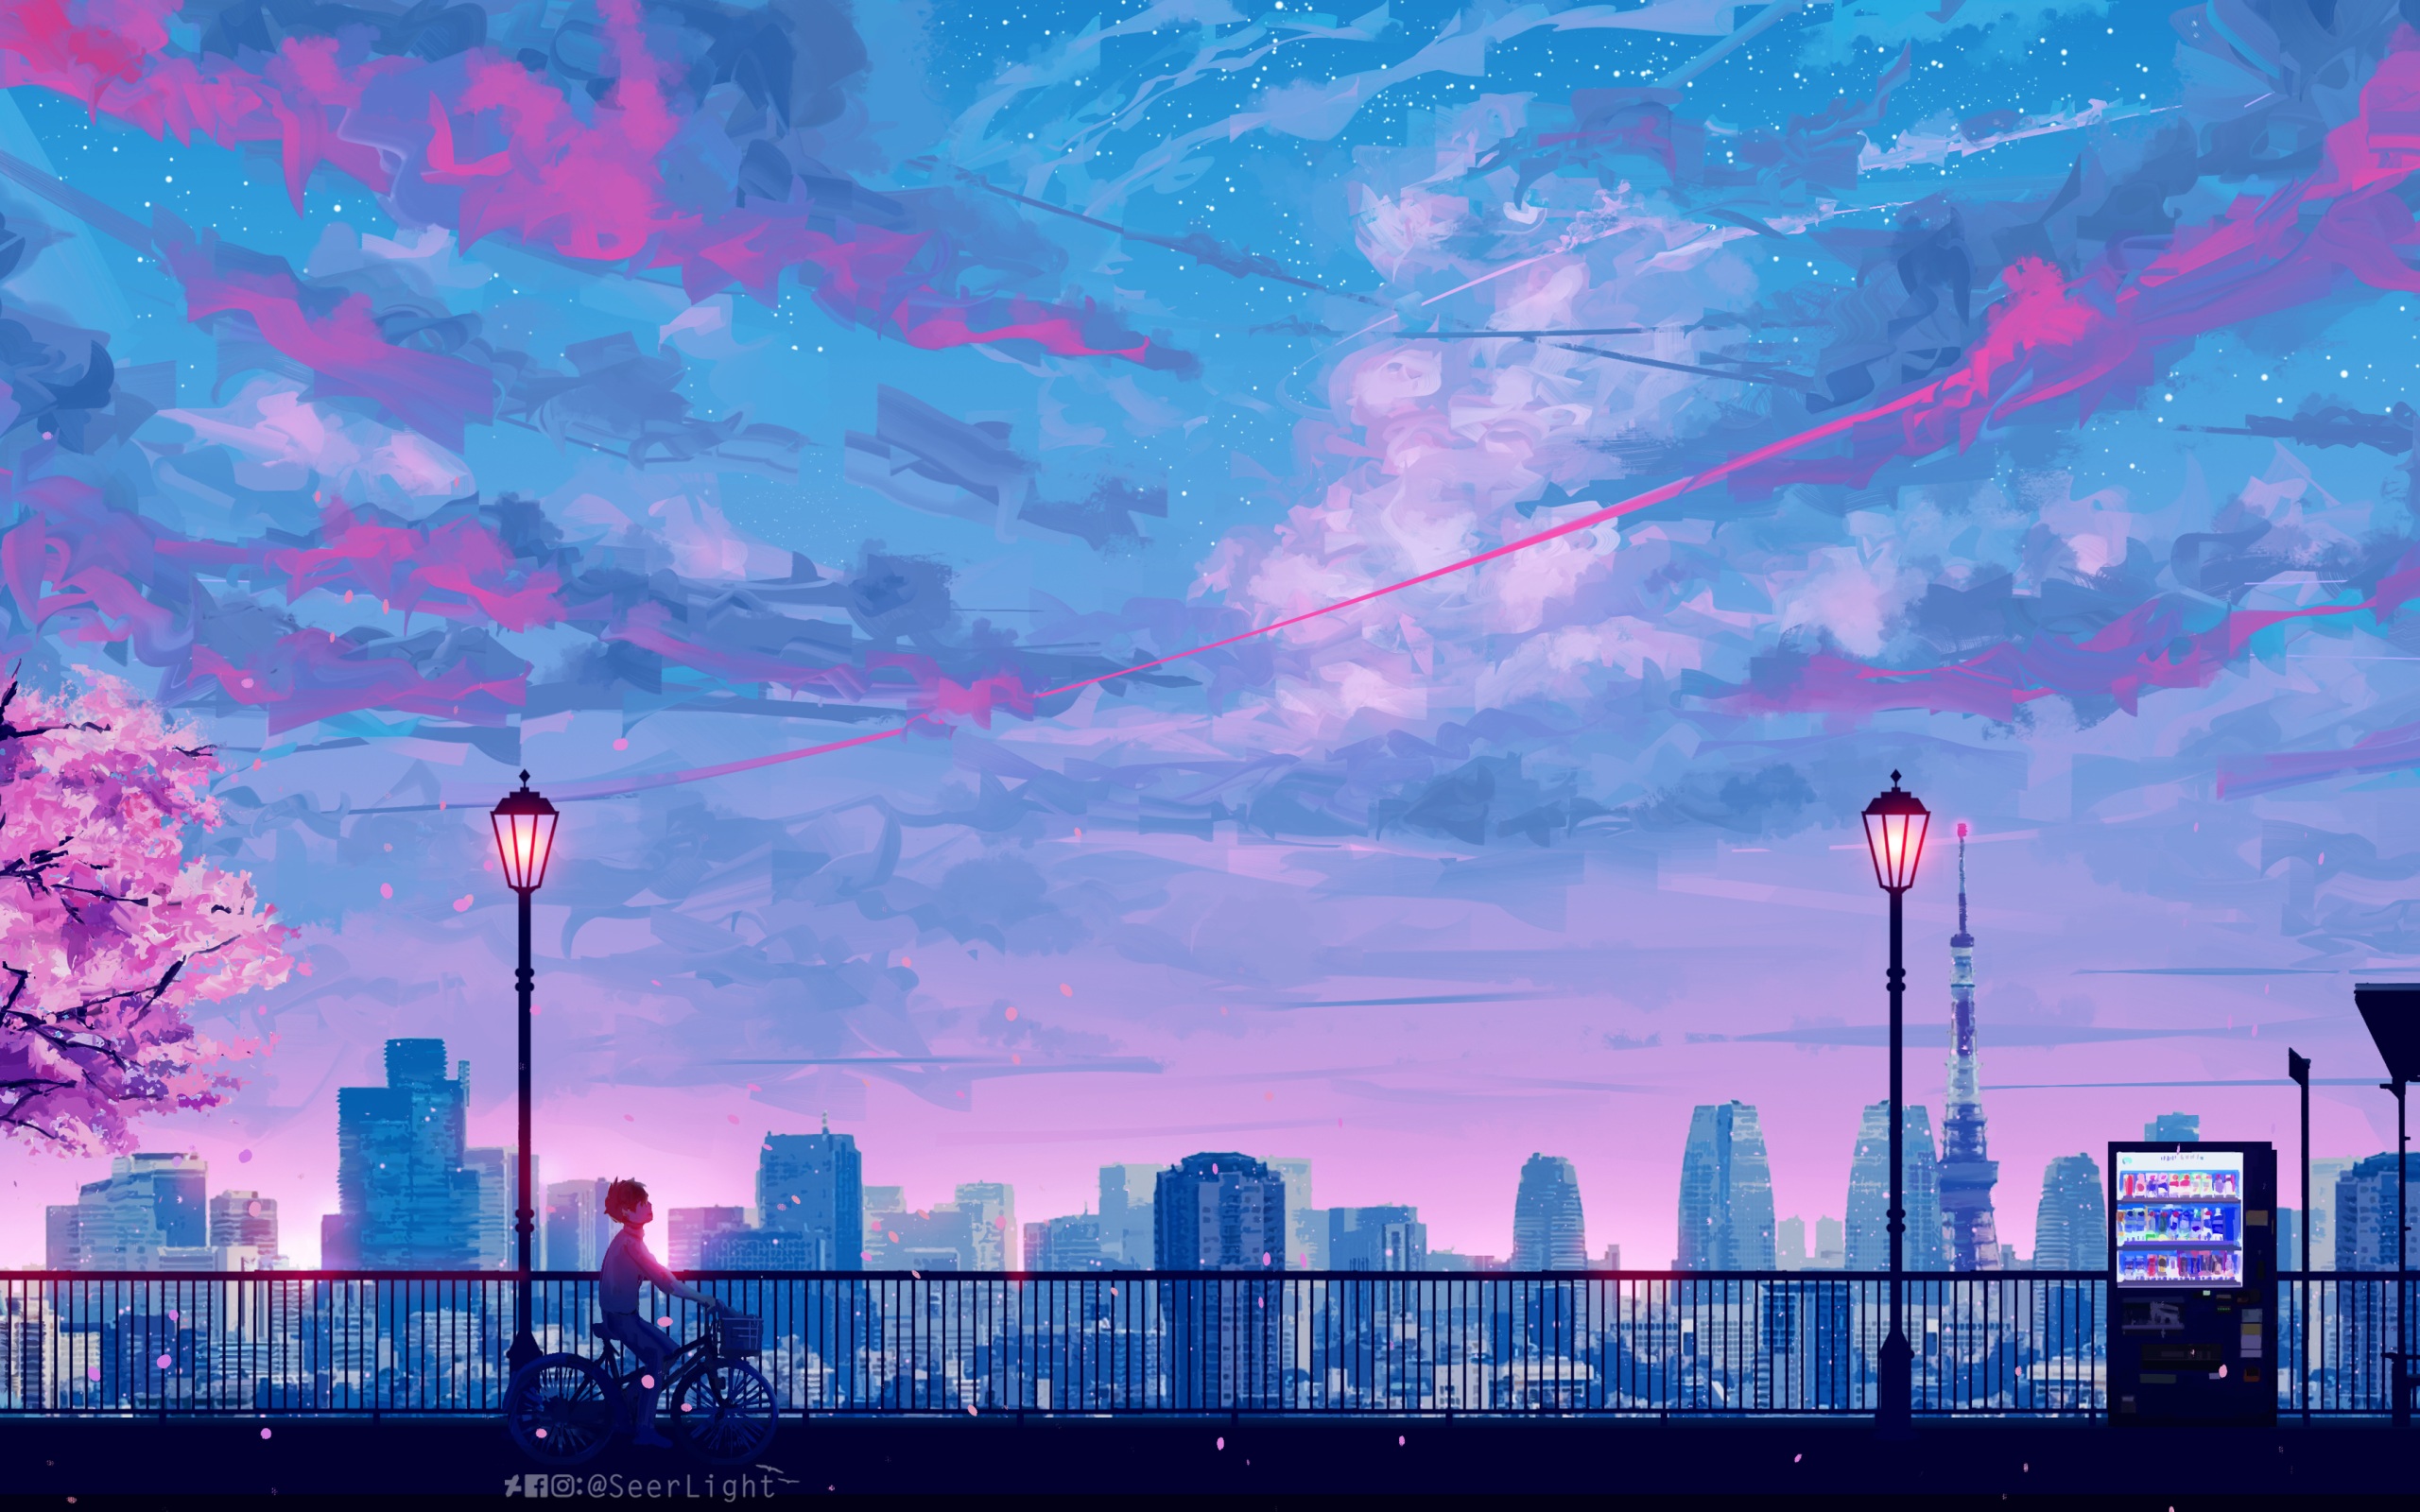 Bạn muốn tìm kiếm một bức hình nền Anime phong cảnh động lực tuyệt đẹp? Bức tranh nền Anime cityscape này tạo nên một thành phố hiện đại và phóng khoáng. Tông màu tươi sáng mang đến cảm giác sảng khoái cho màn hình của bạn. Hãy thưởng thức trọn vẹn vẻ đẹp rực rỡ của Anime cityscape thông qua bức ảnh này.